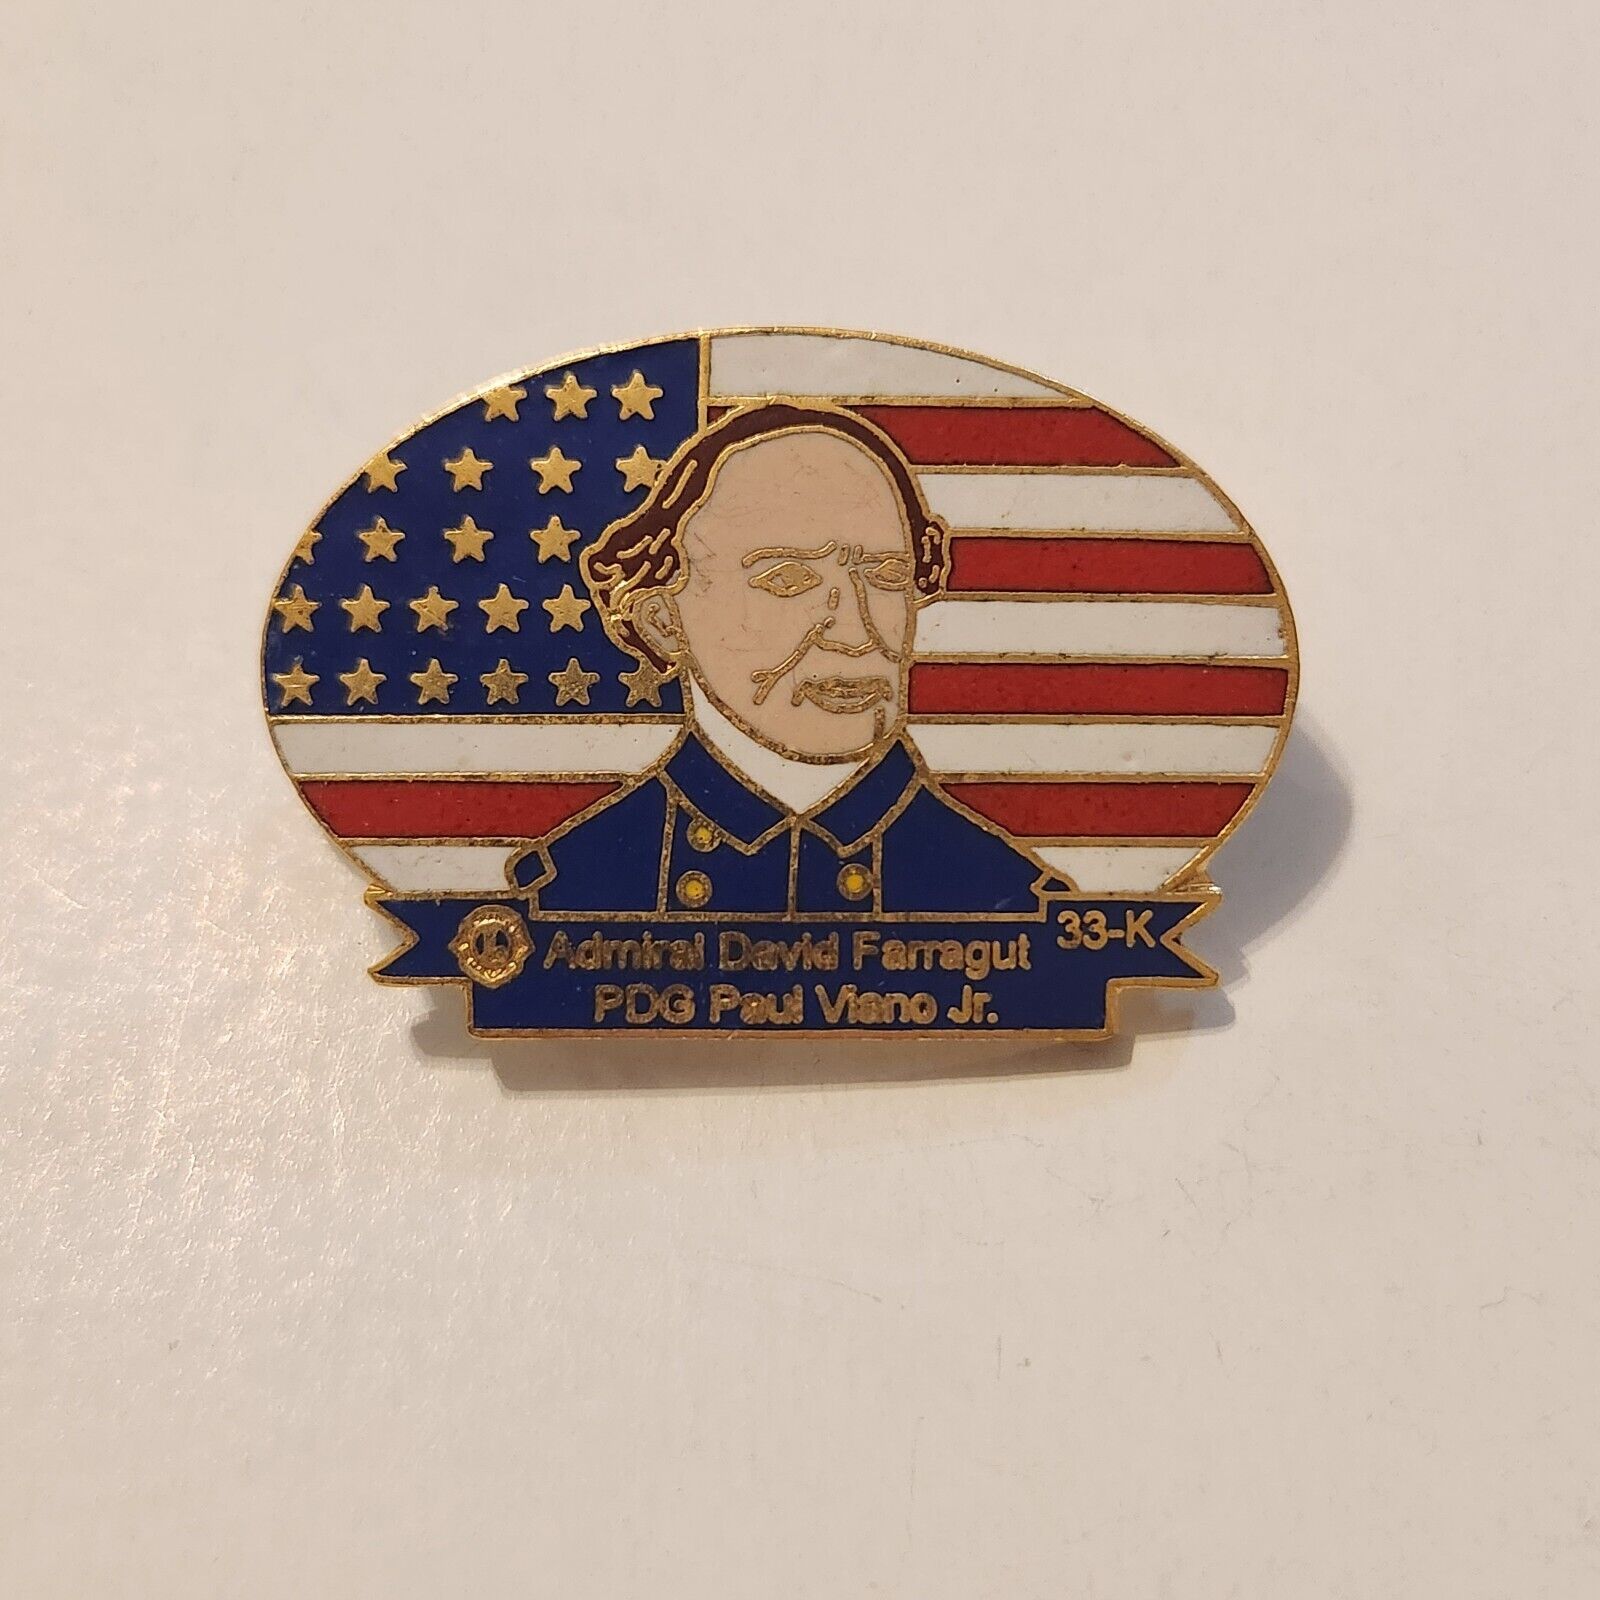 Admiral David Farragut District 33-K Civil War Lions Club Pin